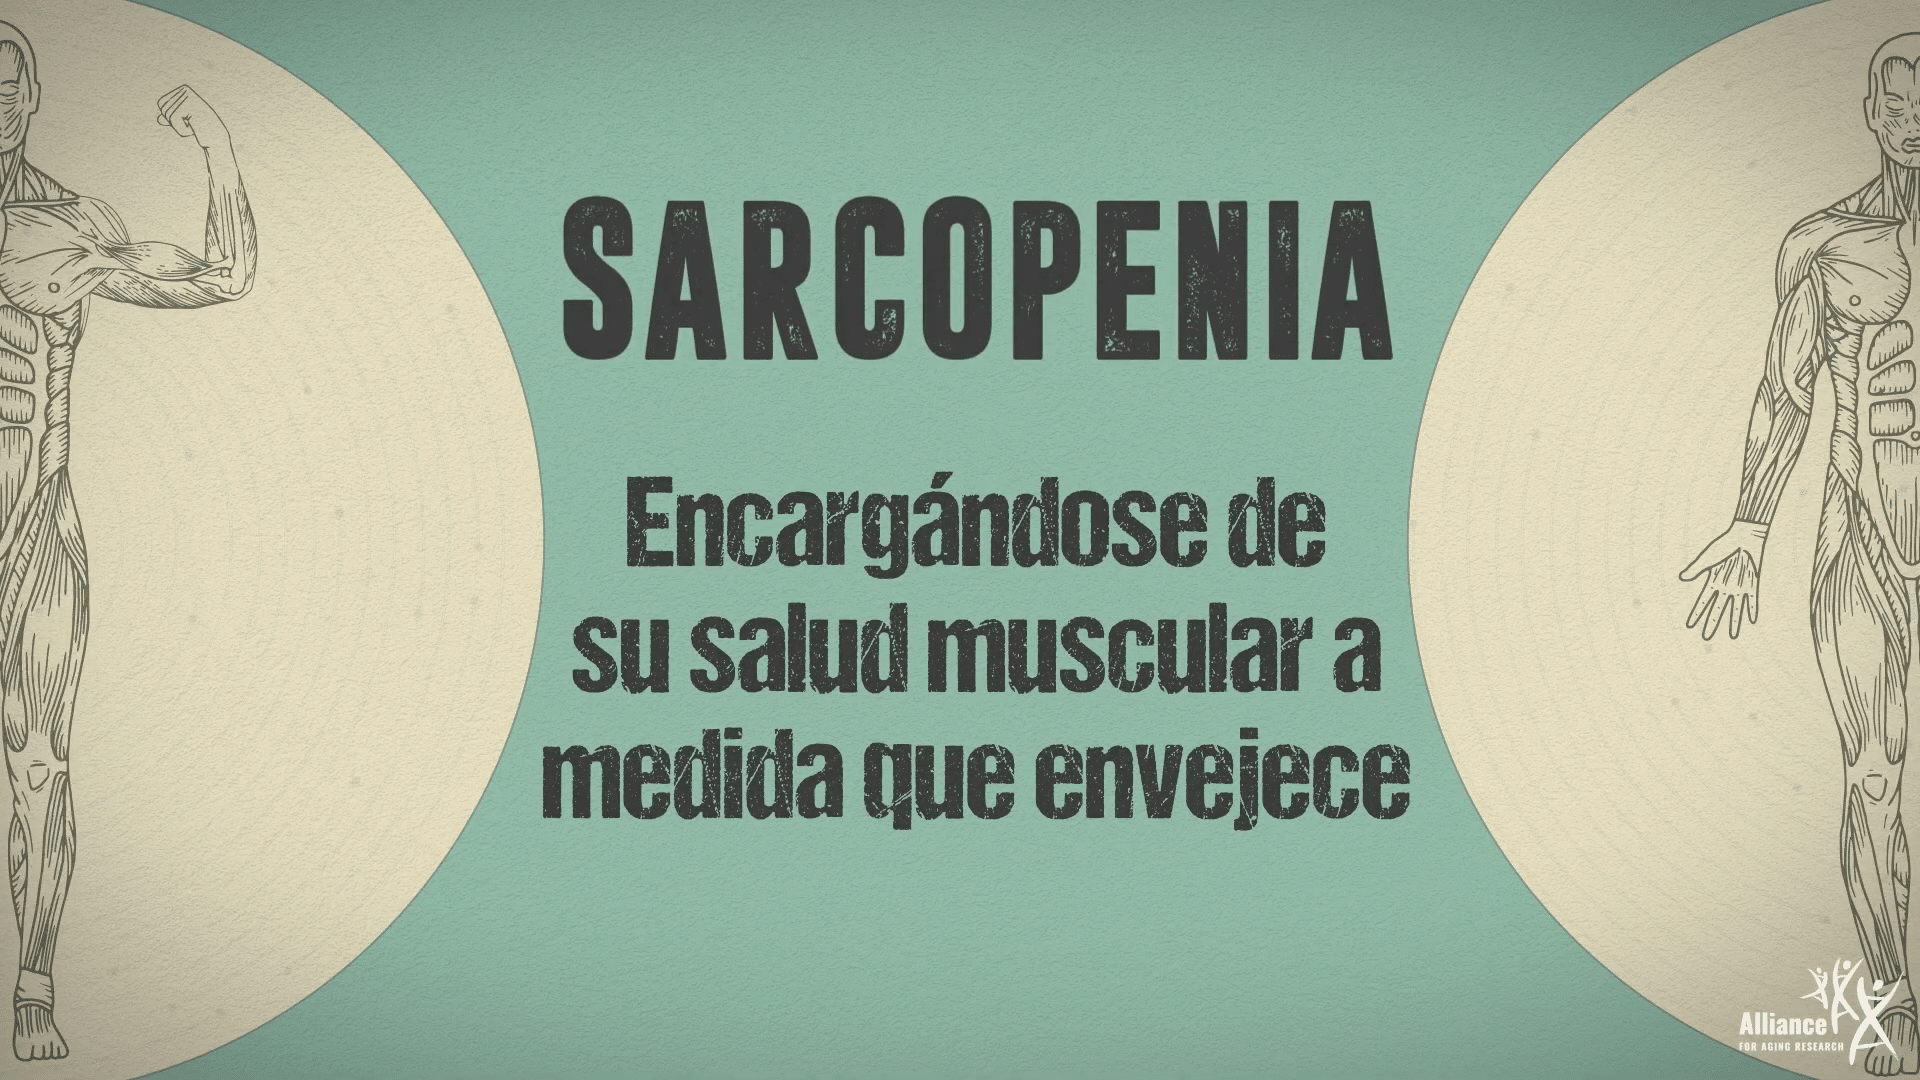 "Sarcopenia" portada del video en español.